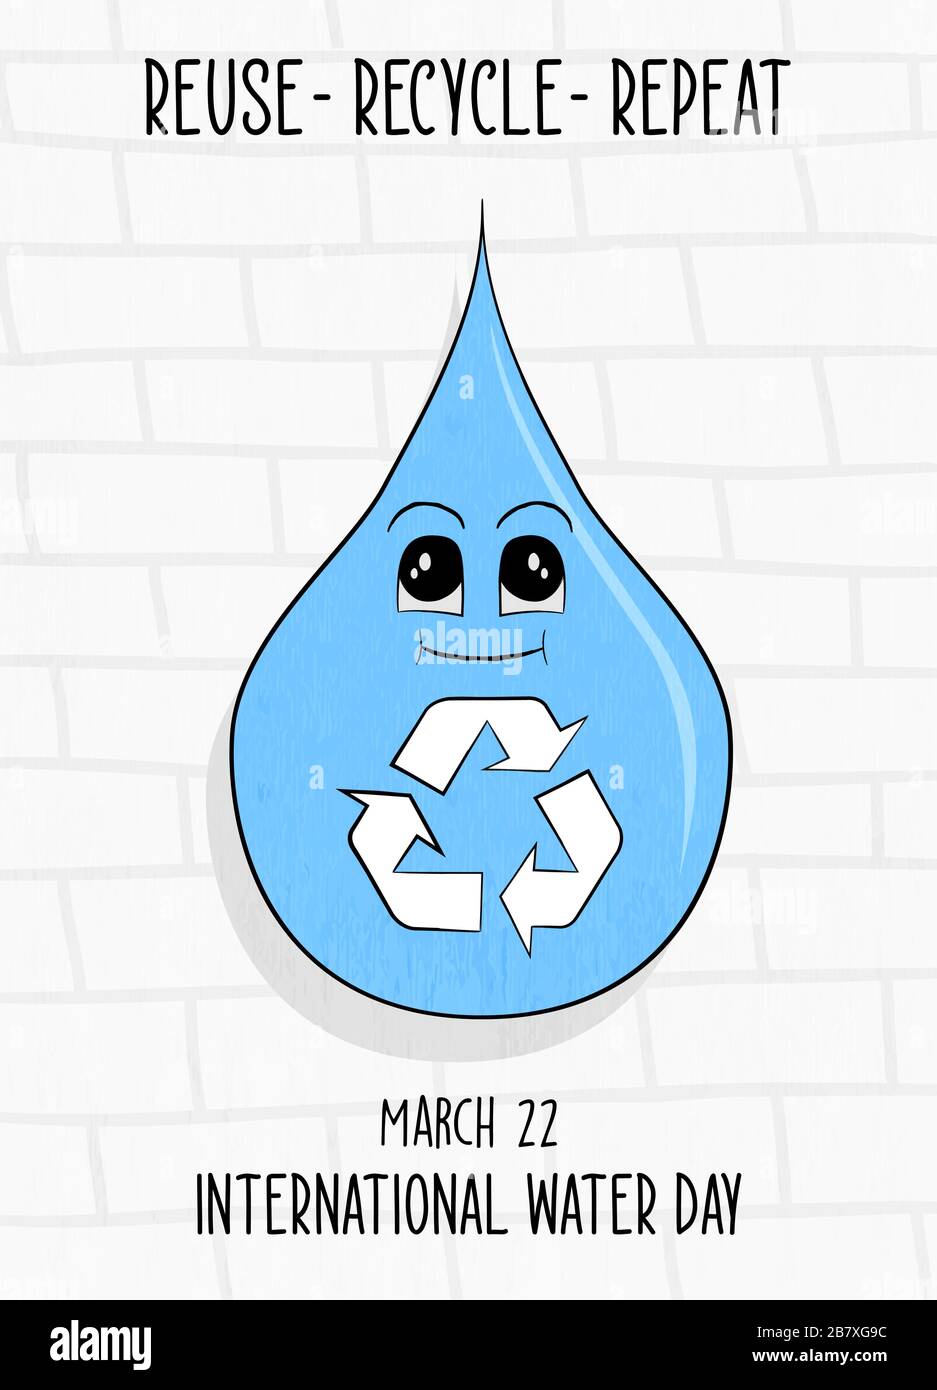 Grußkarte mit Flüssigtropfenzeichen für den internationalen Wassertag mit wiederverwendbaren wiederverwendbaren Textvorschlägen zur Abfallreduzierung. 22. märz Kampagnenveranstaltung illus Stock Vektor